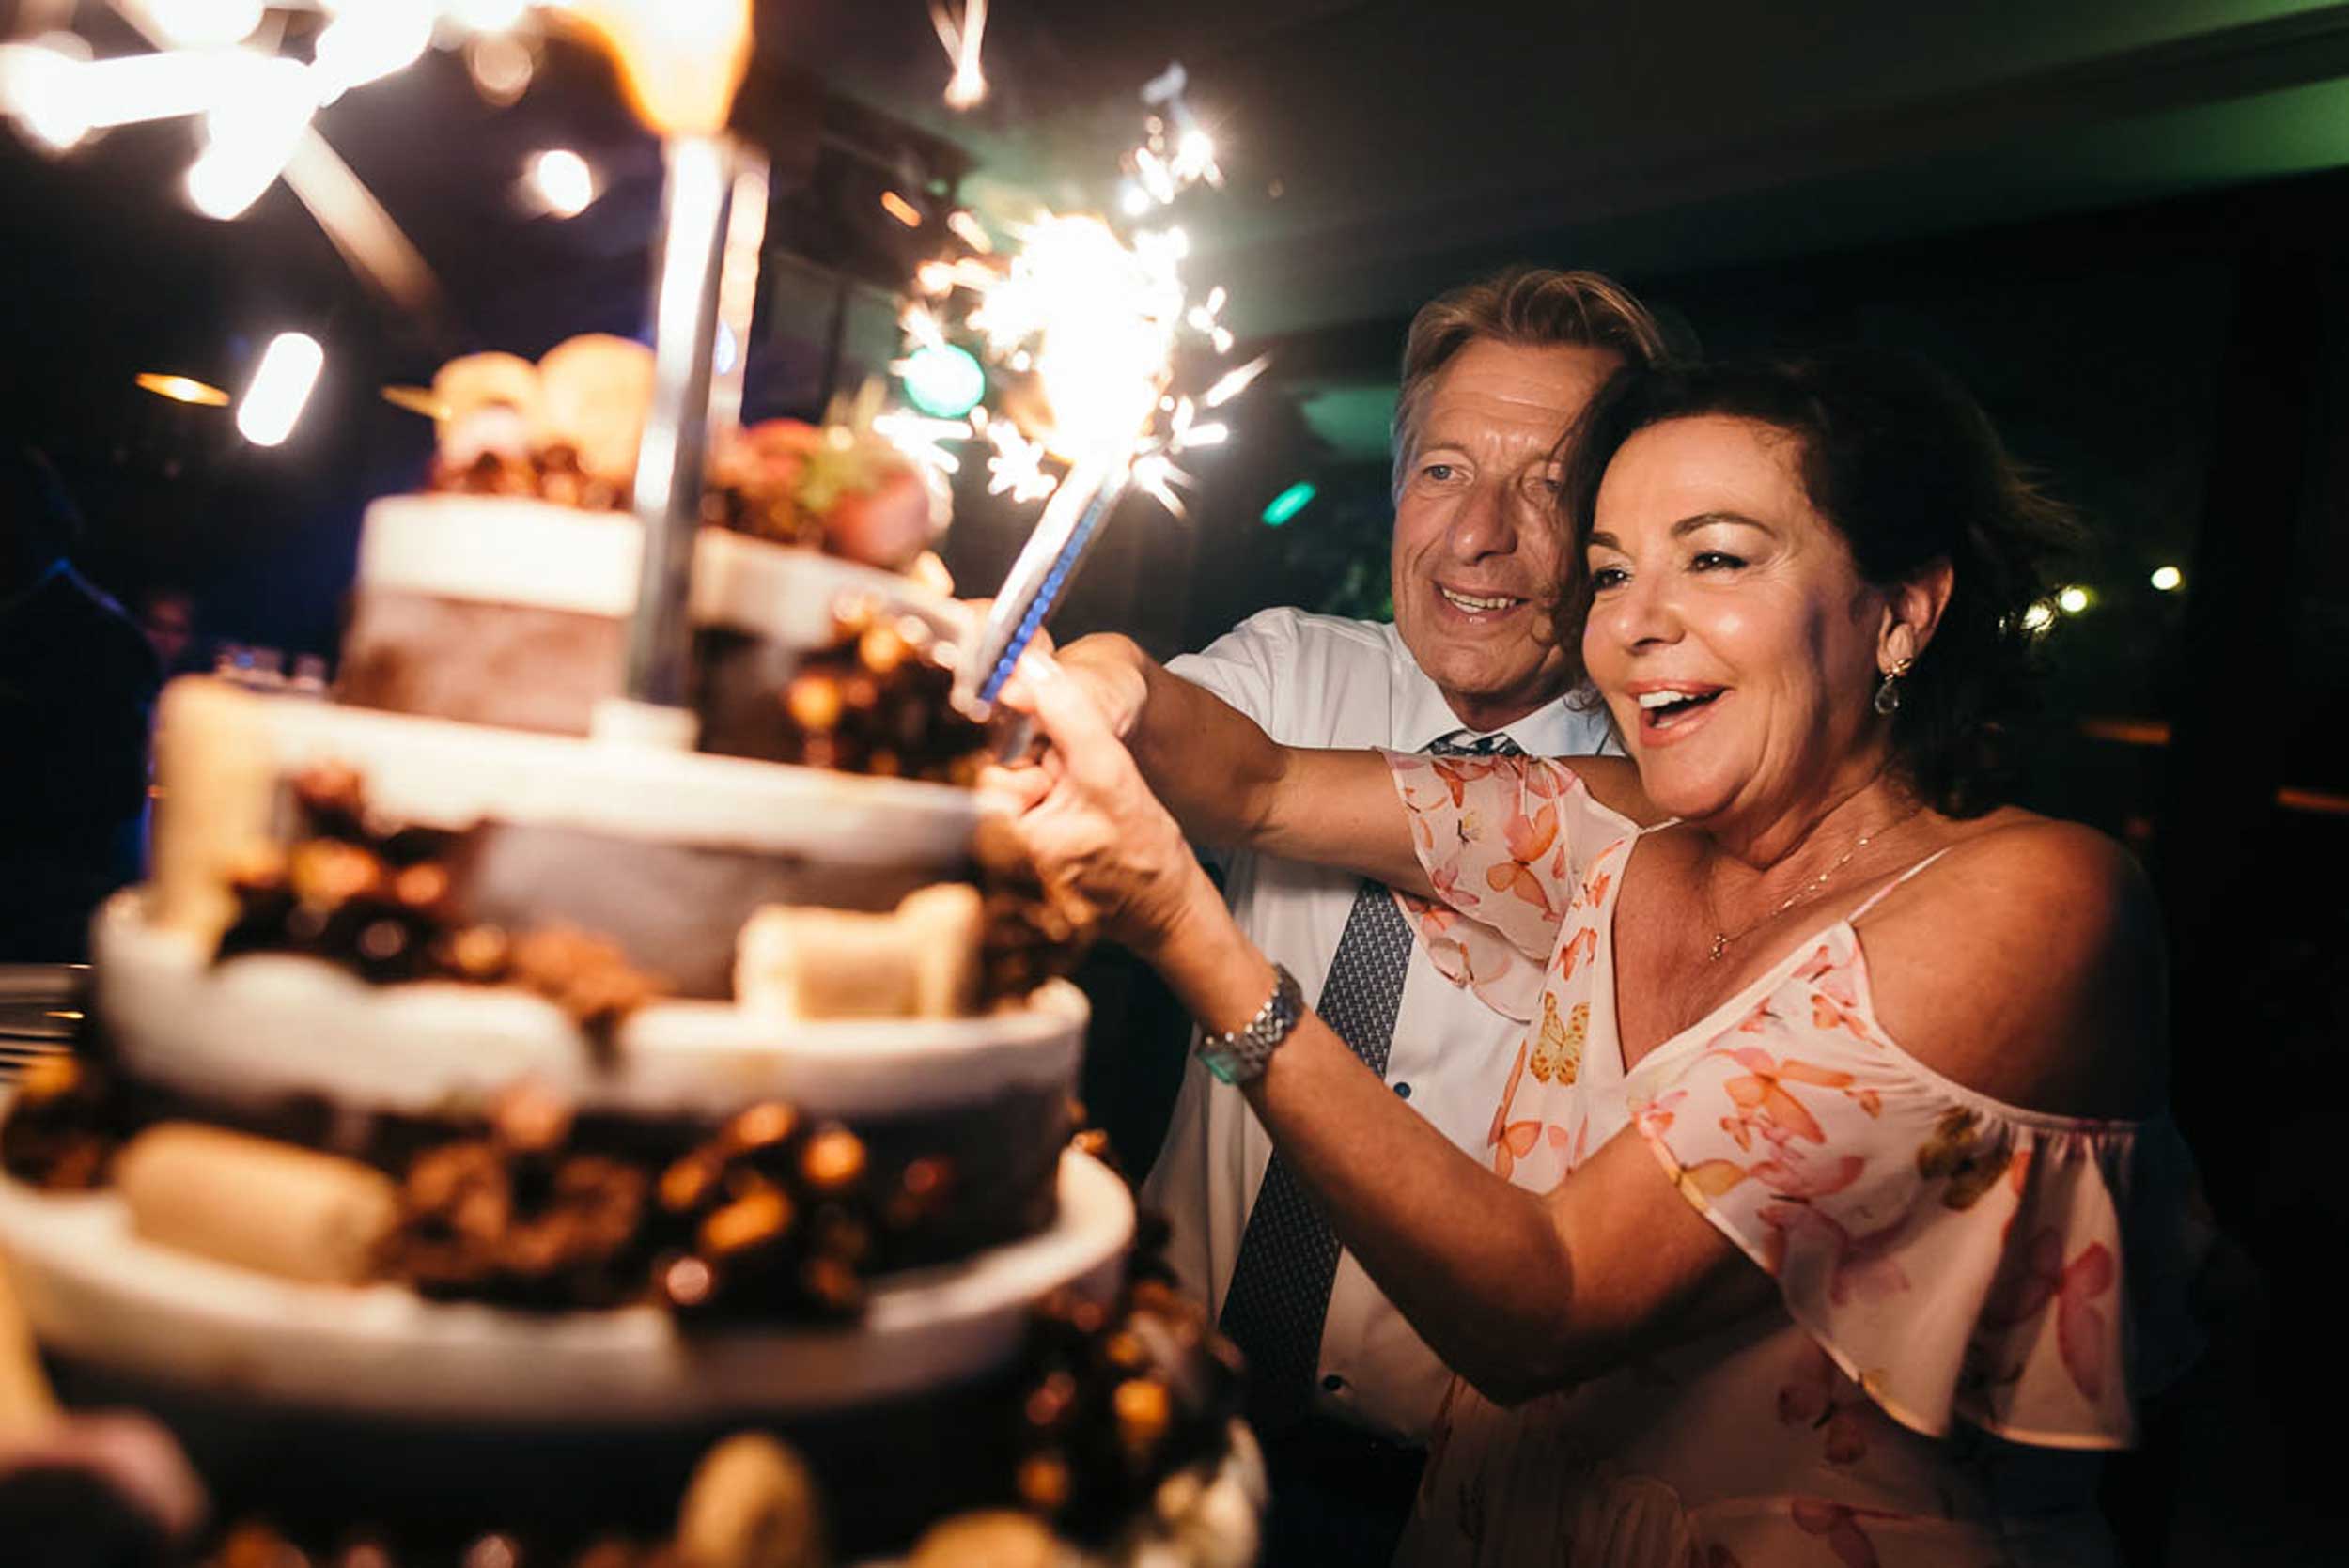 Ervaren liefde: Bruidspaar op leeftijd snijdt de taart aan, met een guitige blik tussen de bruid en bruidegom.